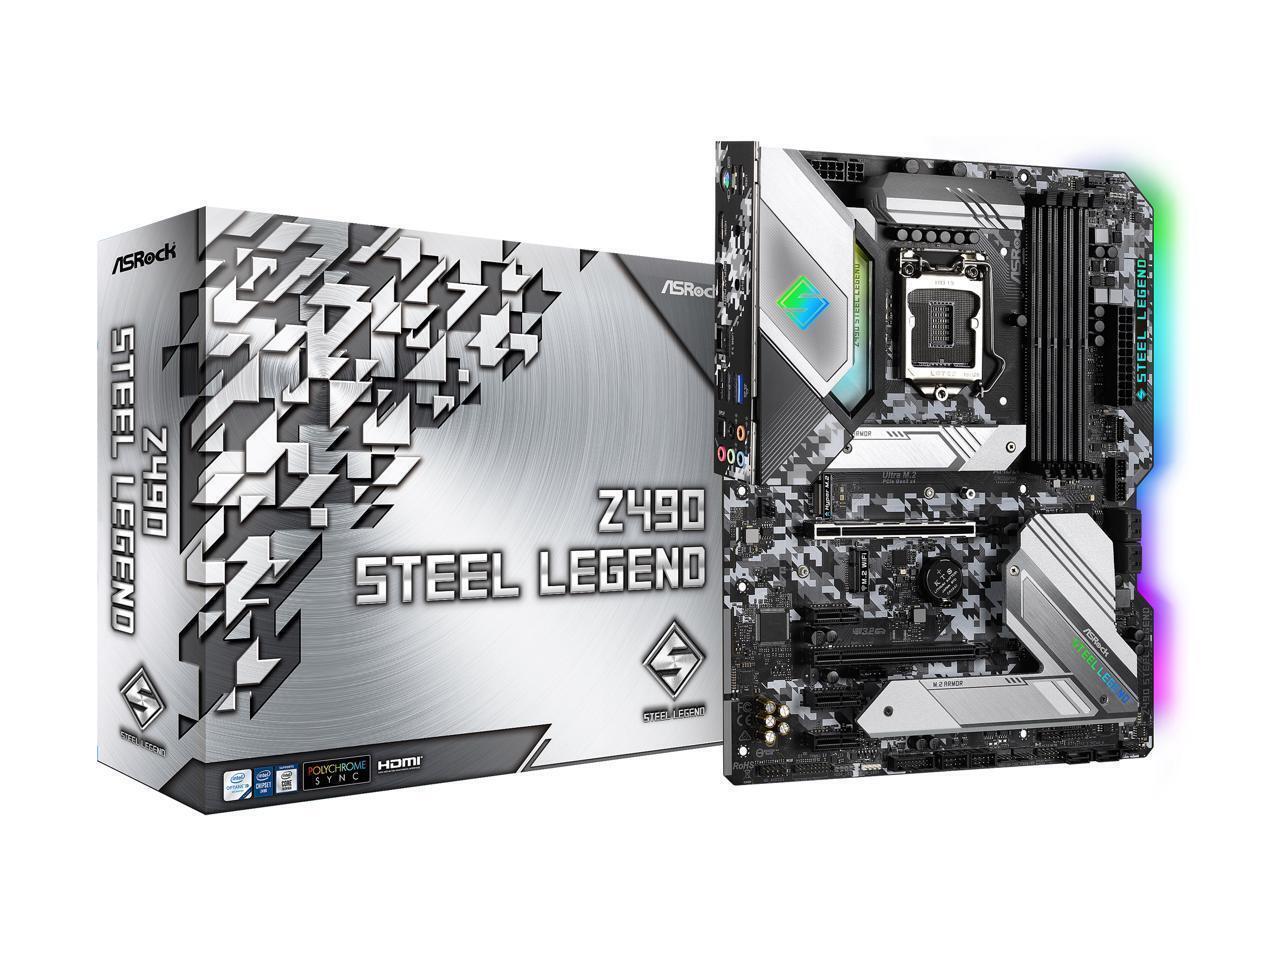 ASRock Z490 Steel Legend LGA 1200 Intel Z490 SATA 6Gb/s ATX Intel Motherboard